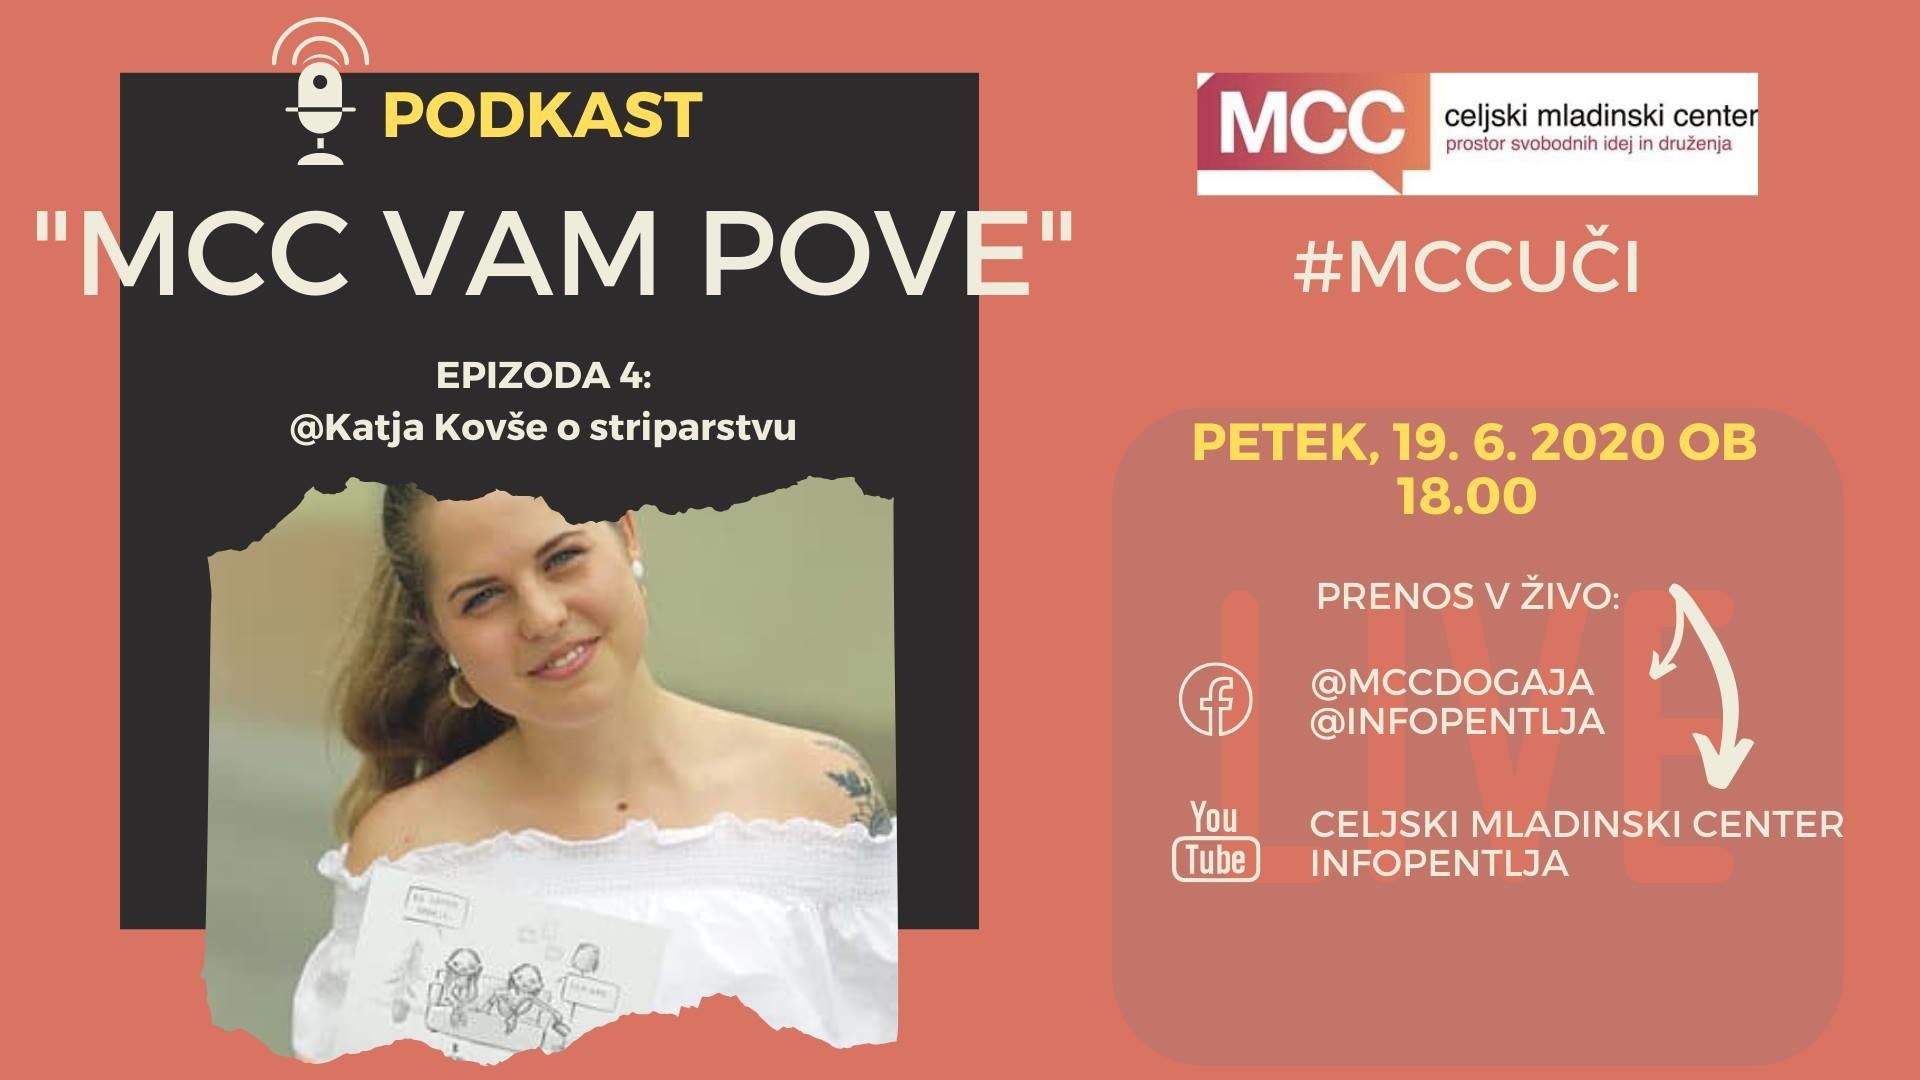 MCC vam pove: Podkast s Katjo Kovše